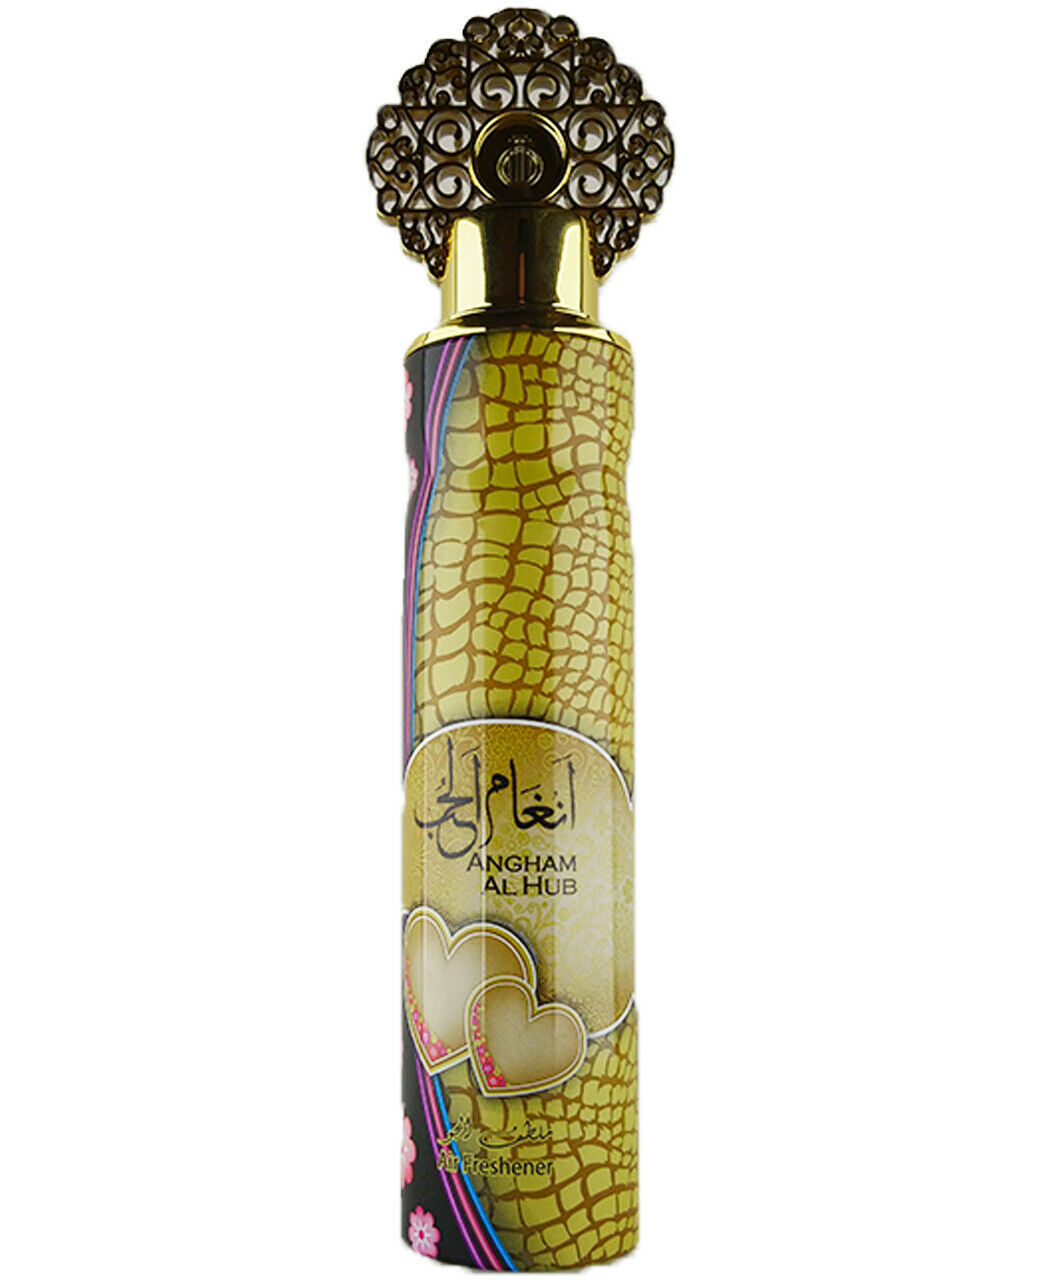 Angham Al Hub 300ml My Perfumes Exotic Air freshener